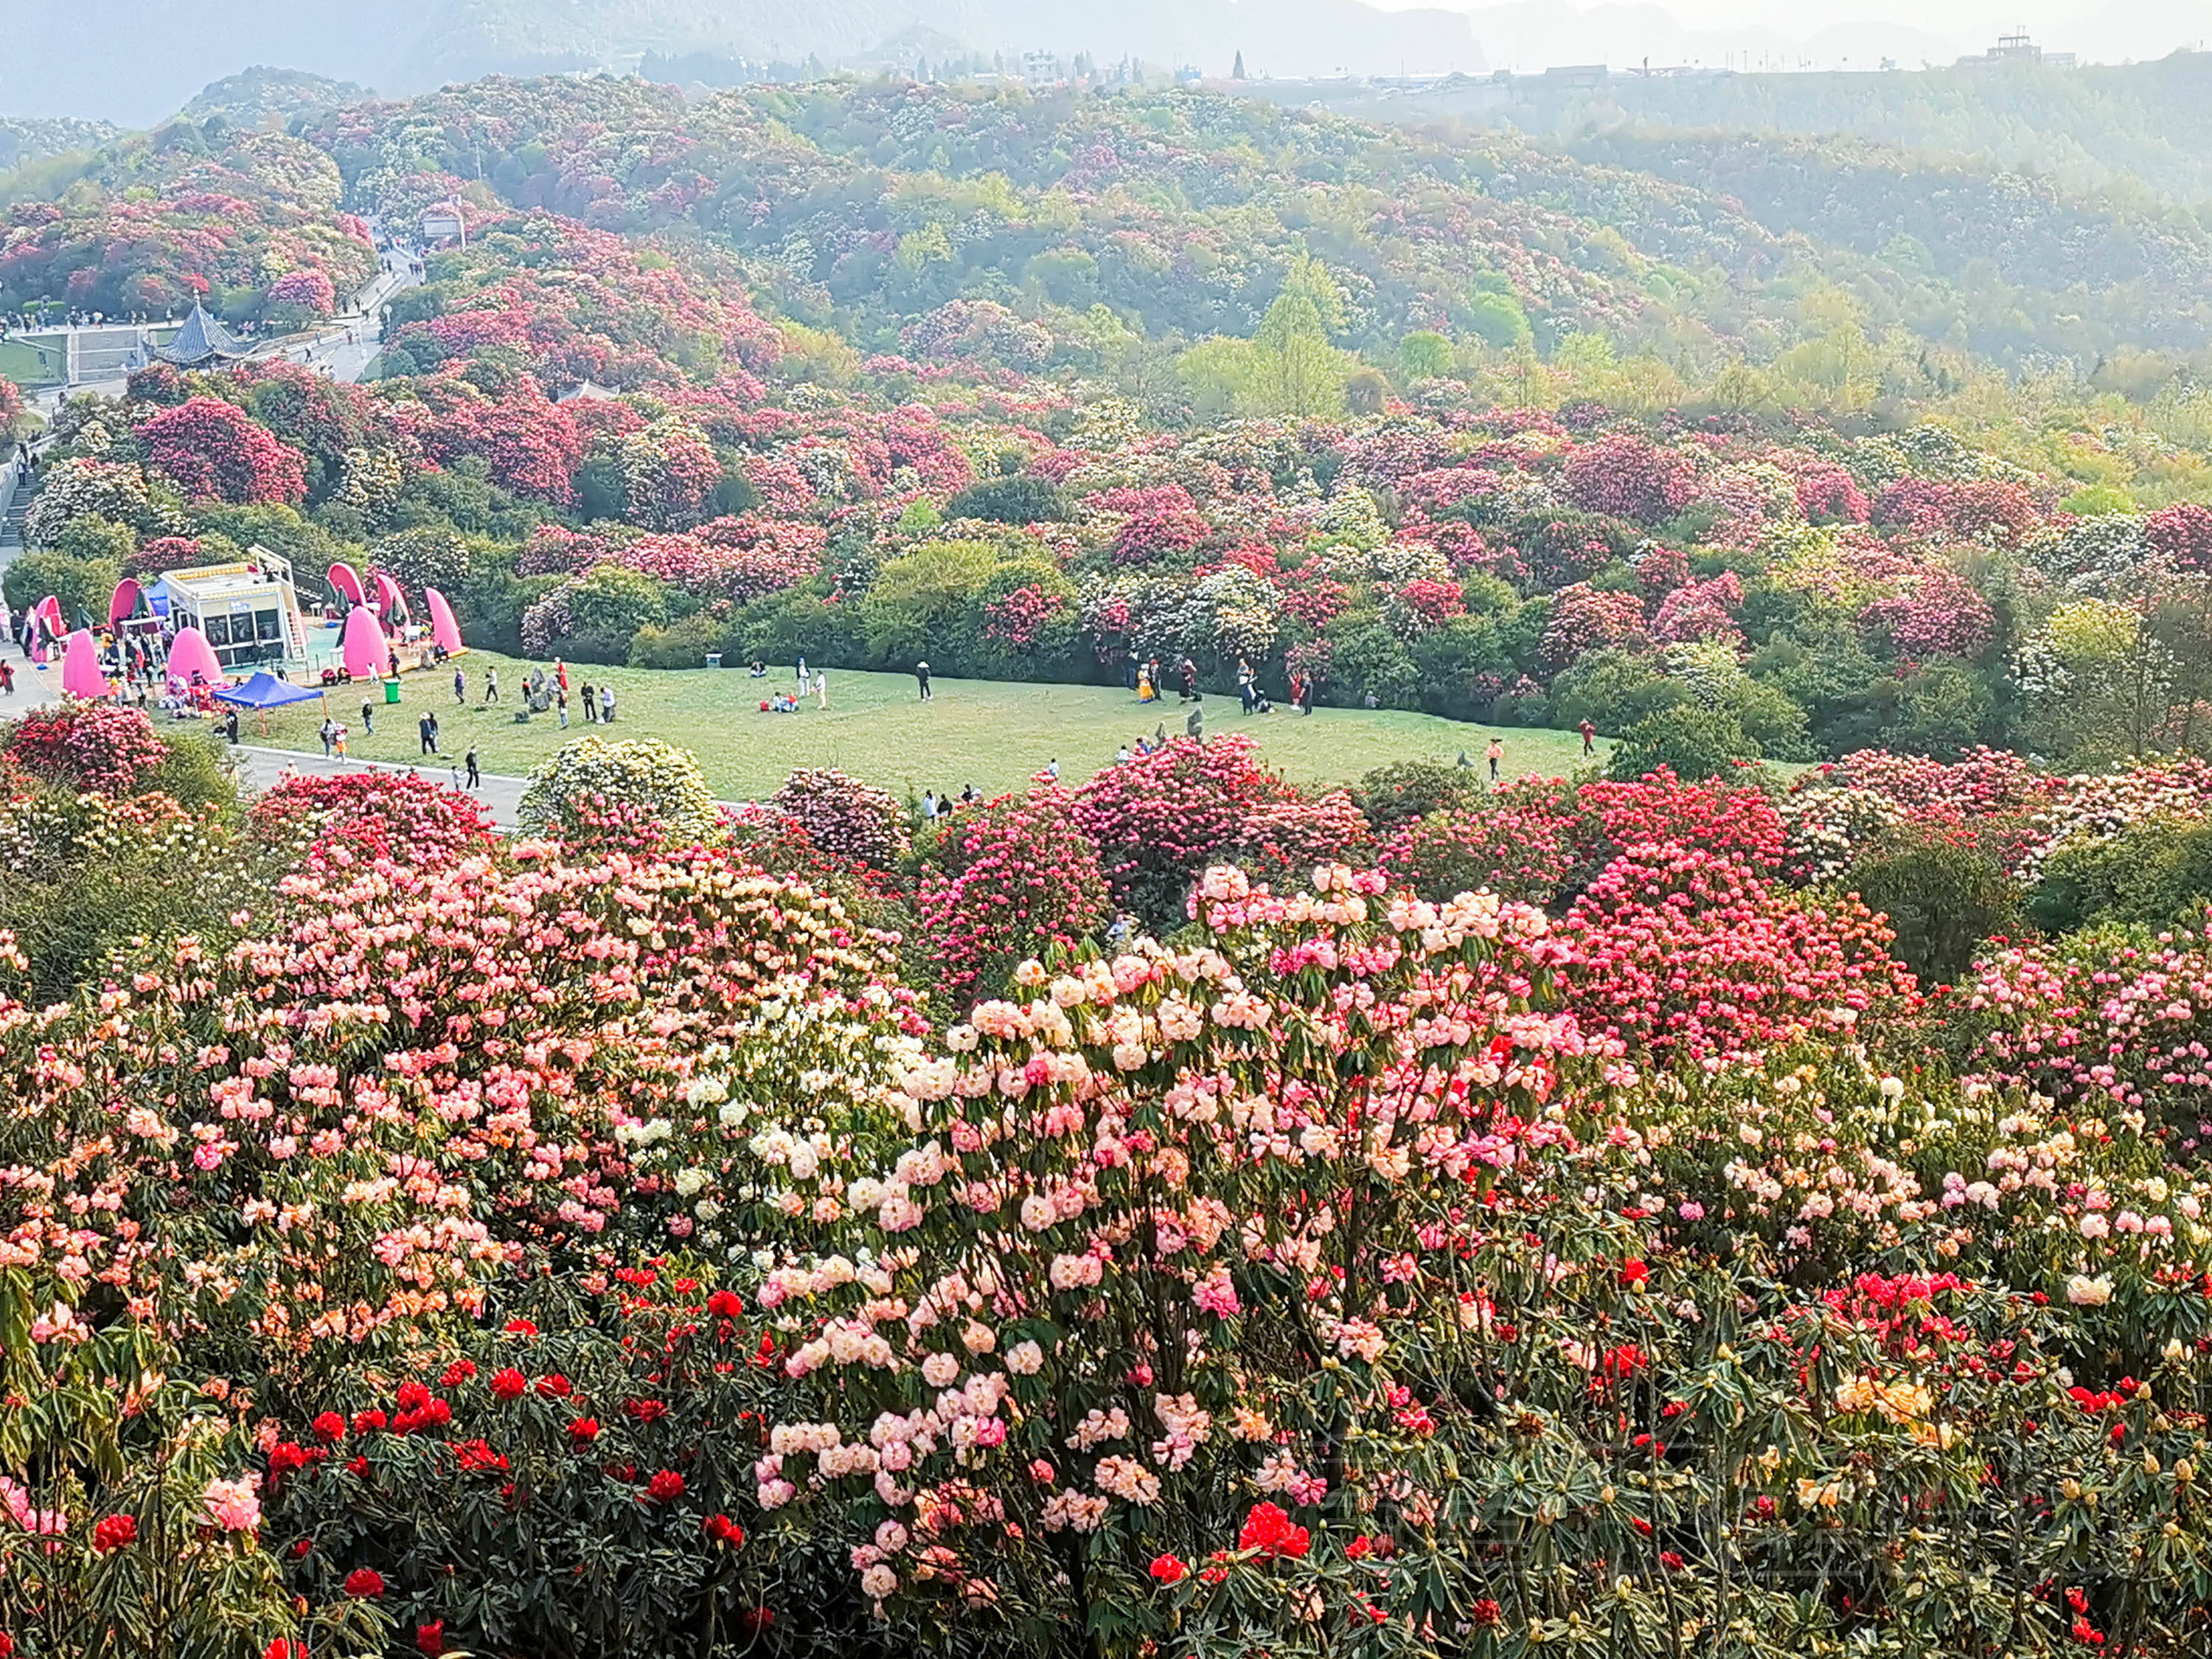 百里杜鹃风景区位于贵州省西北部,总面积约有一百二十多平方公里,因为